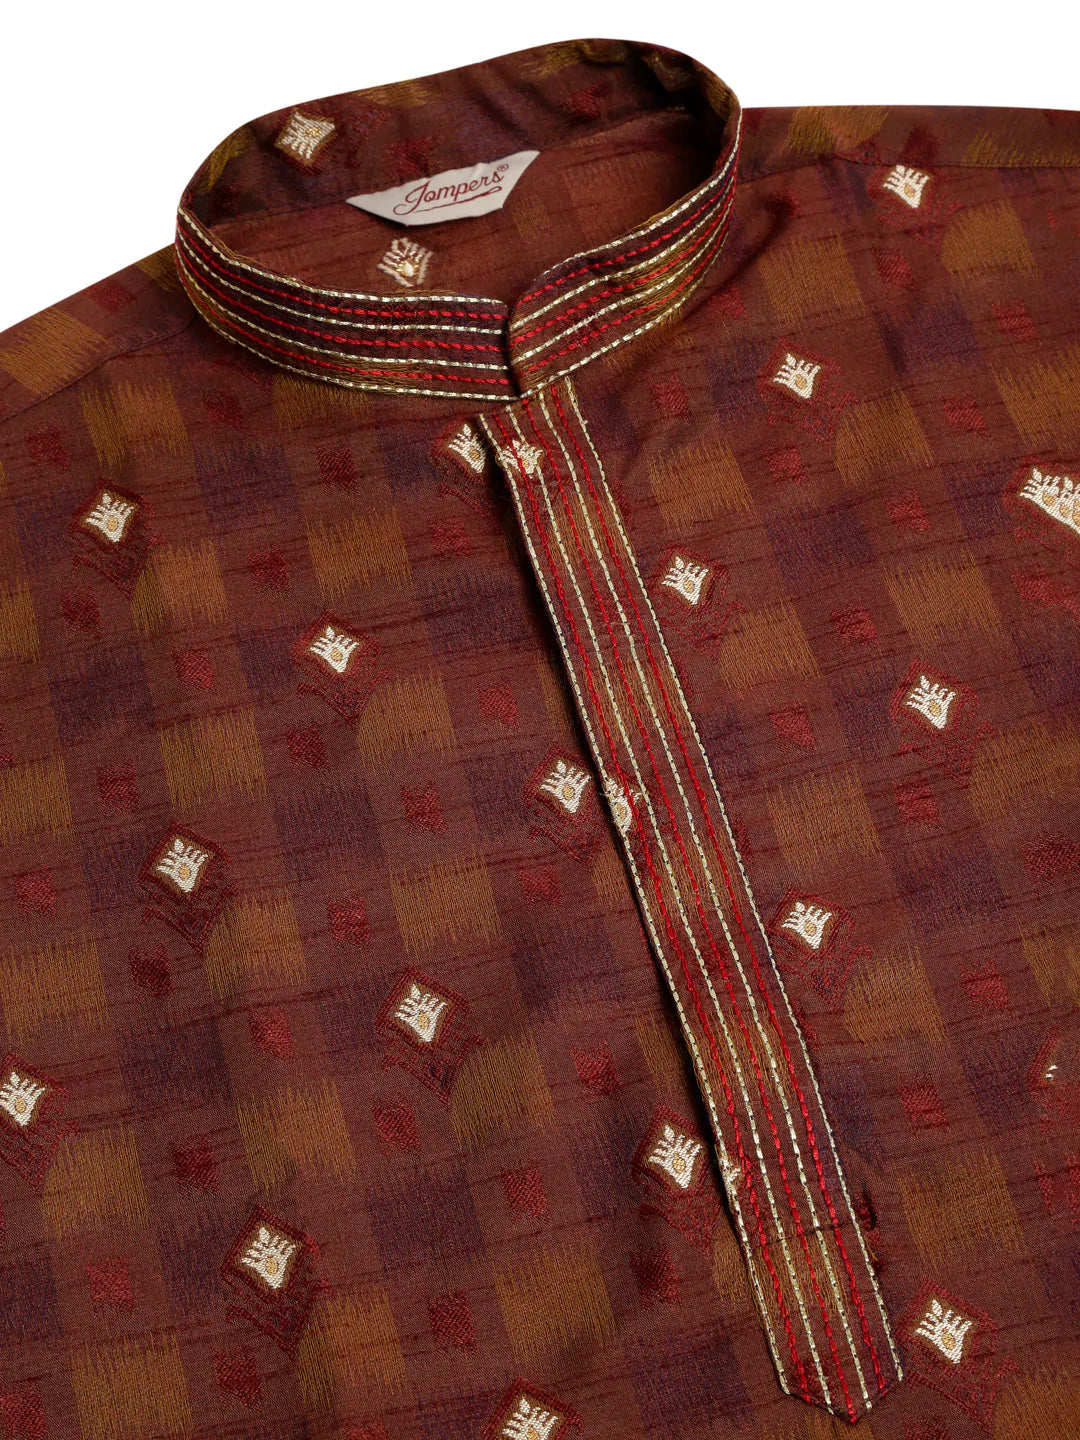 Jompers Men's Maroon Collar Embroidered Woven Design Kurta Pajama ( JOKP 672 Maroon )